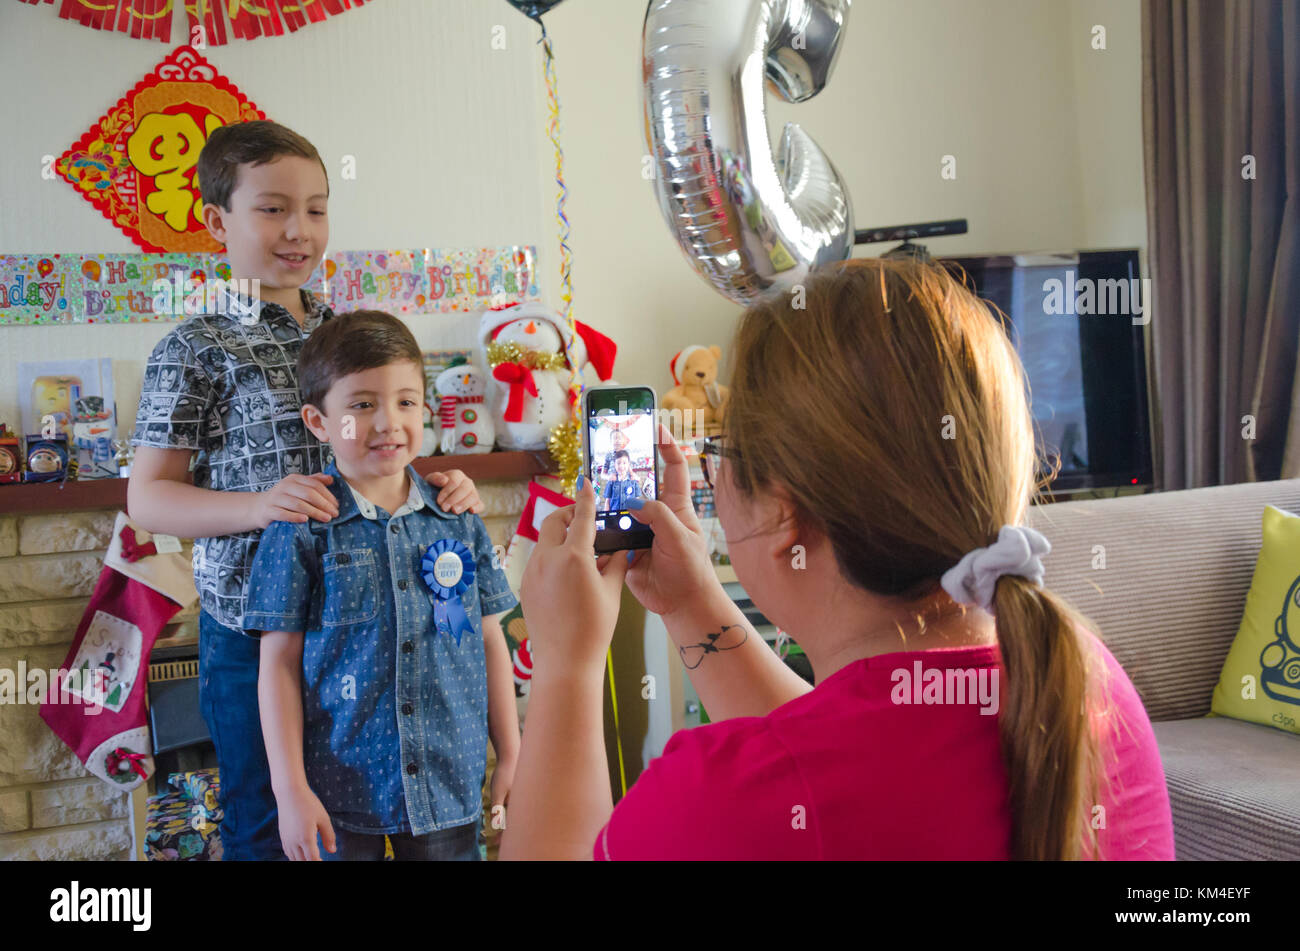 Una madre toma una foto en su iphone de sus dos hijos con ocasión del cumpleaños del hijo menor, Foto de stock